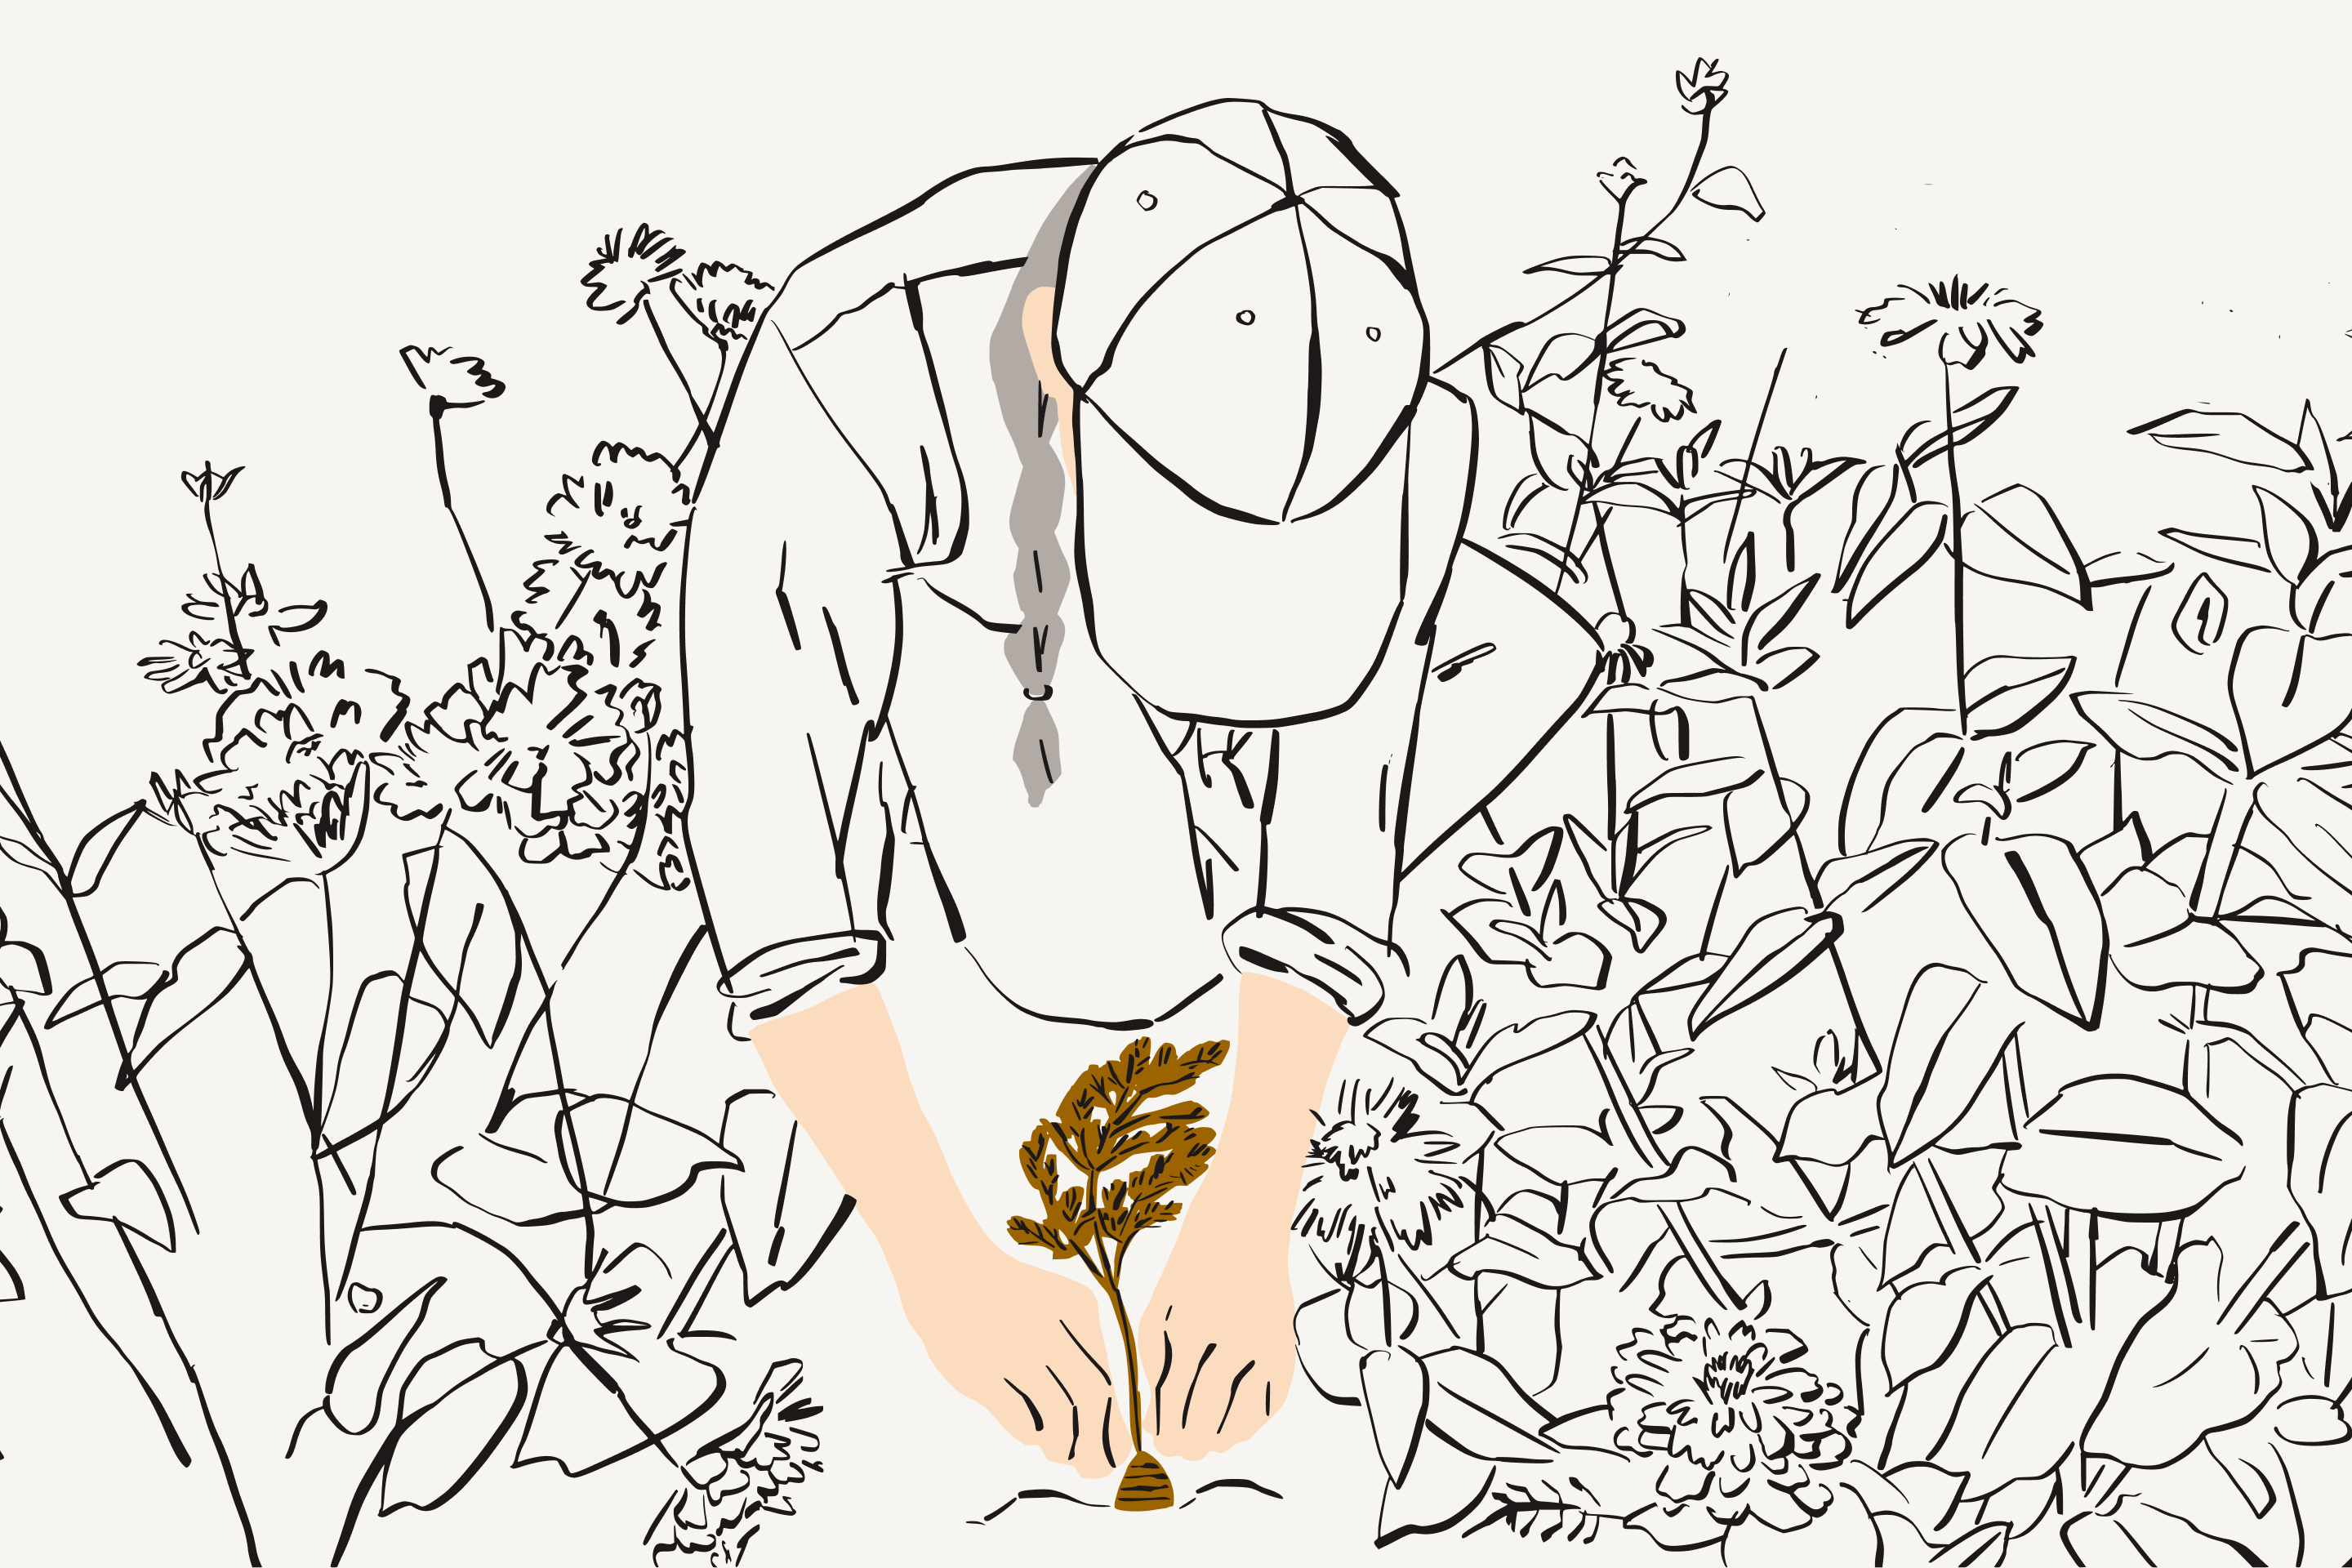 Ilustración de una mujer rodeada de vegetación y plantando un tubérculo.